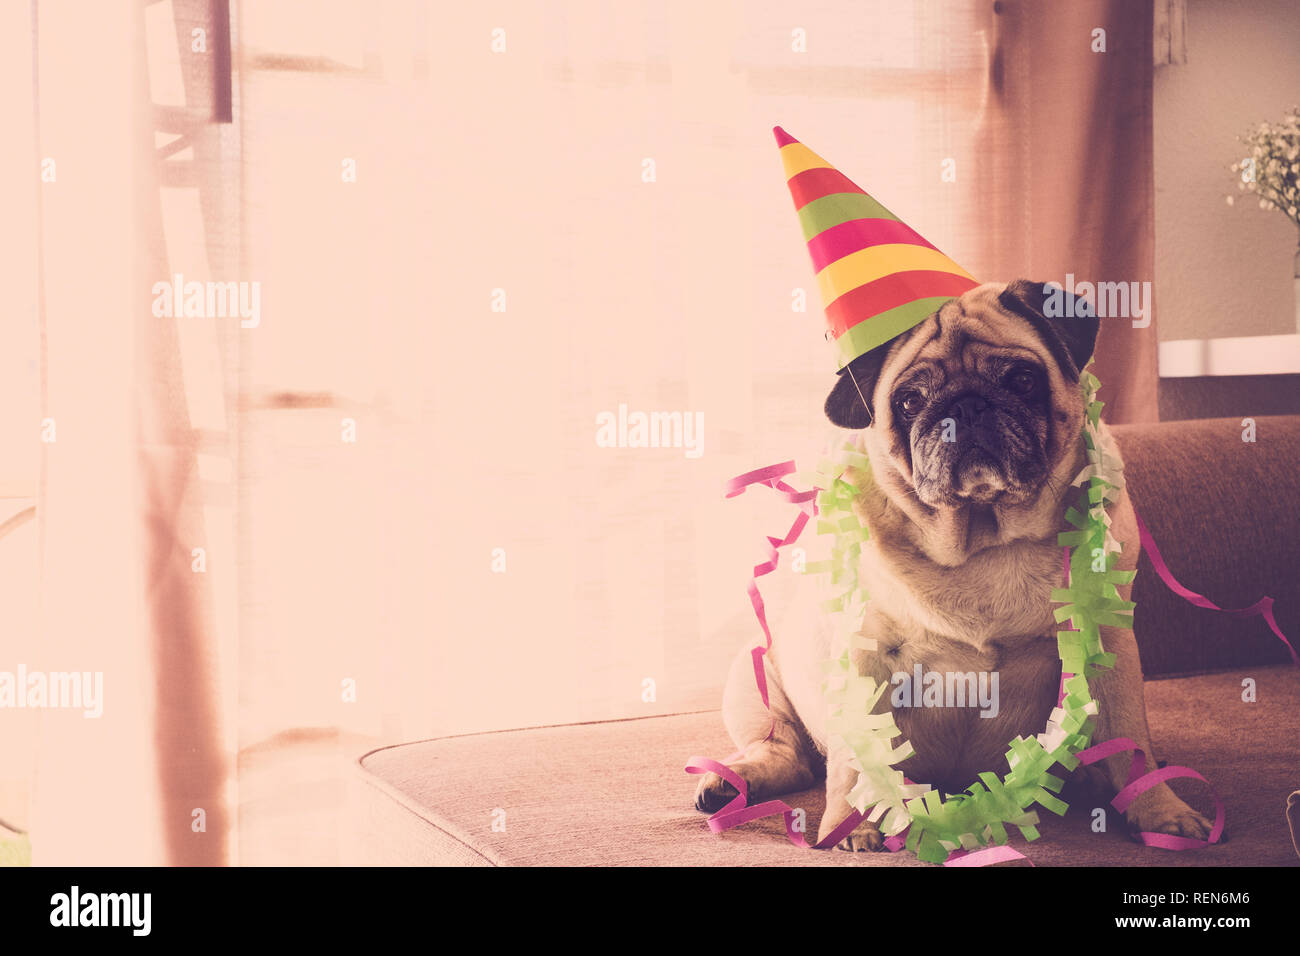 Karneval lustiges Konzept Geburtstag celenration neues Jahr Weihnachten mit Crazy mops Hund mit farbigen Veranstaltung Stil hat Stockfoto